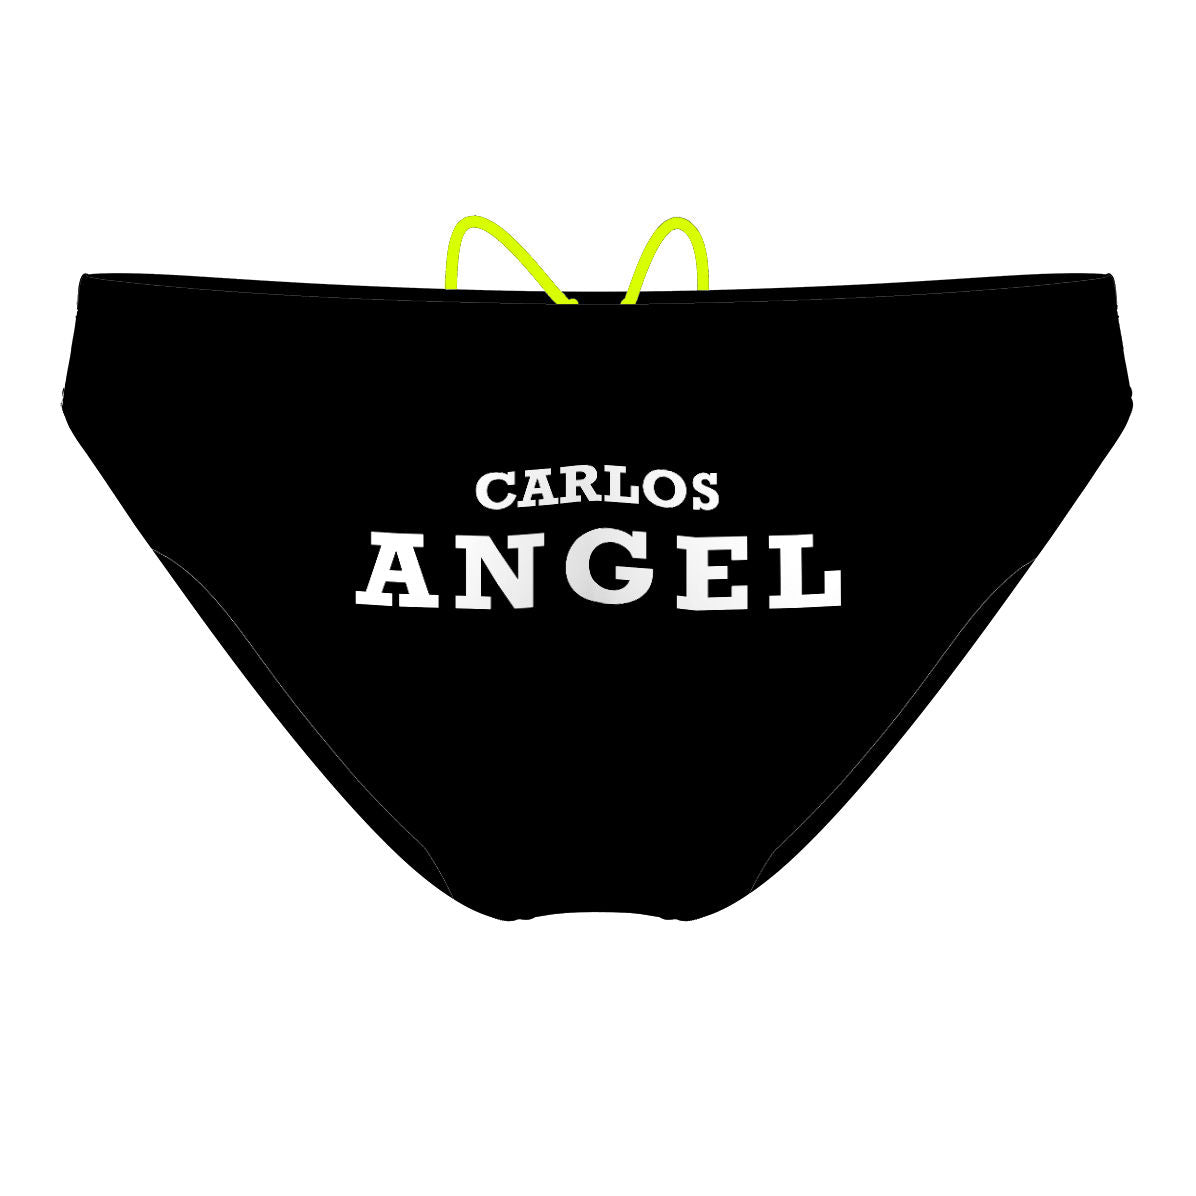 Carlos Angel - Waterpolo Brief